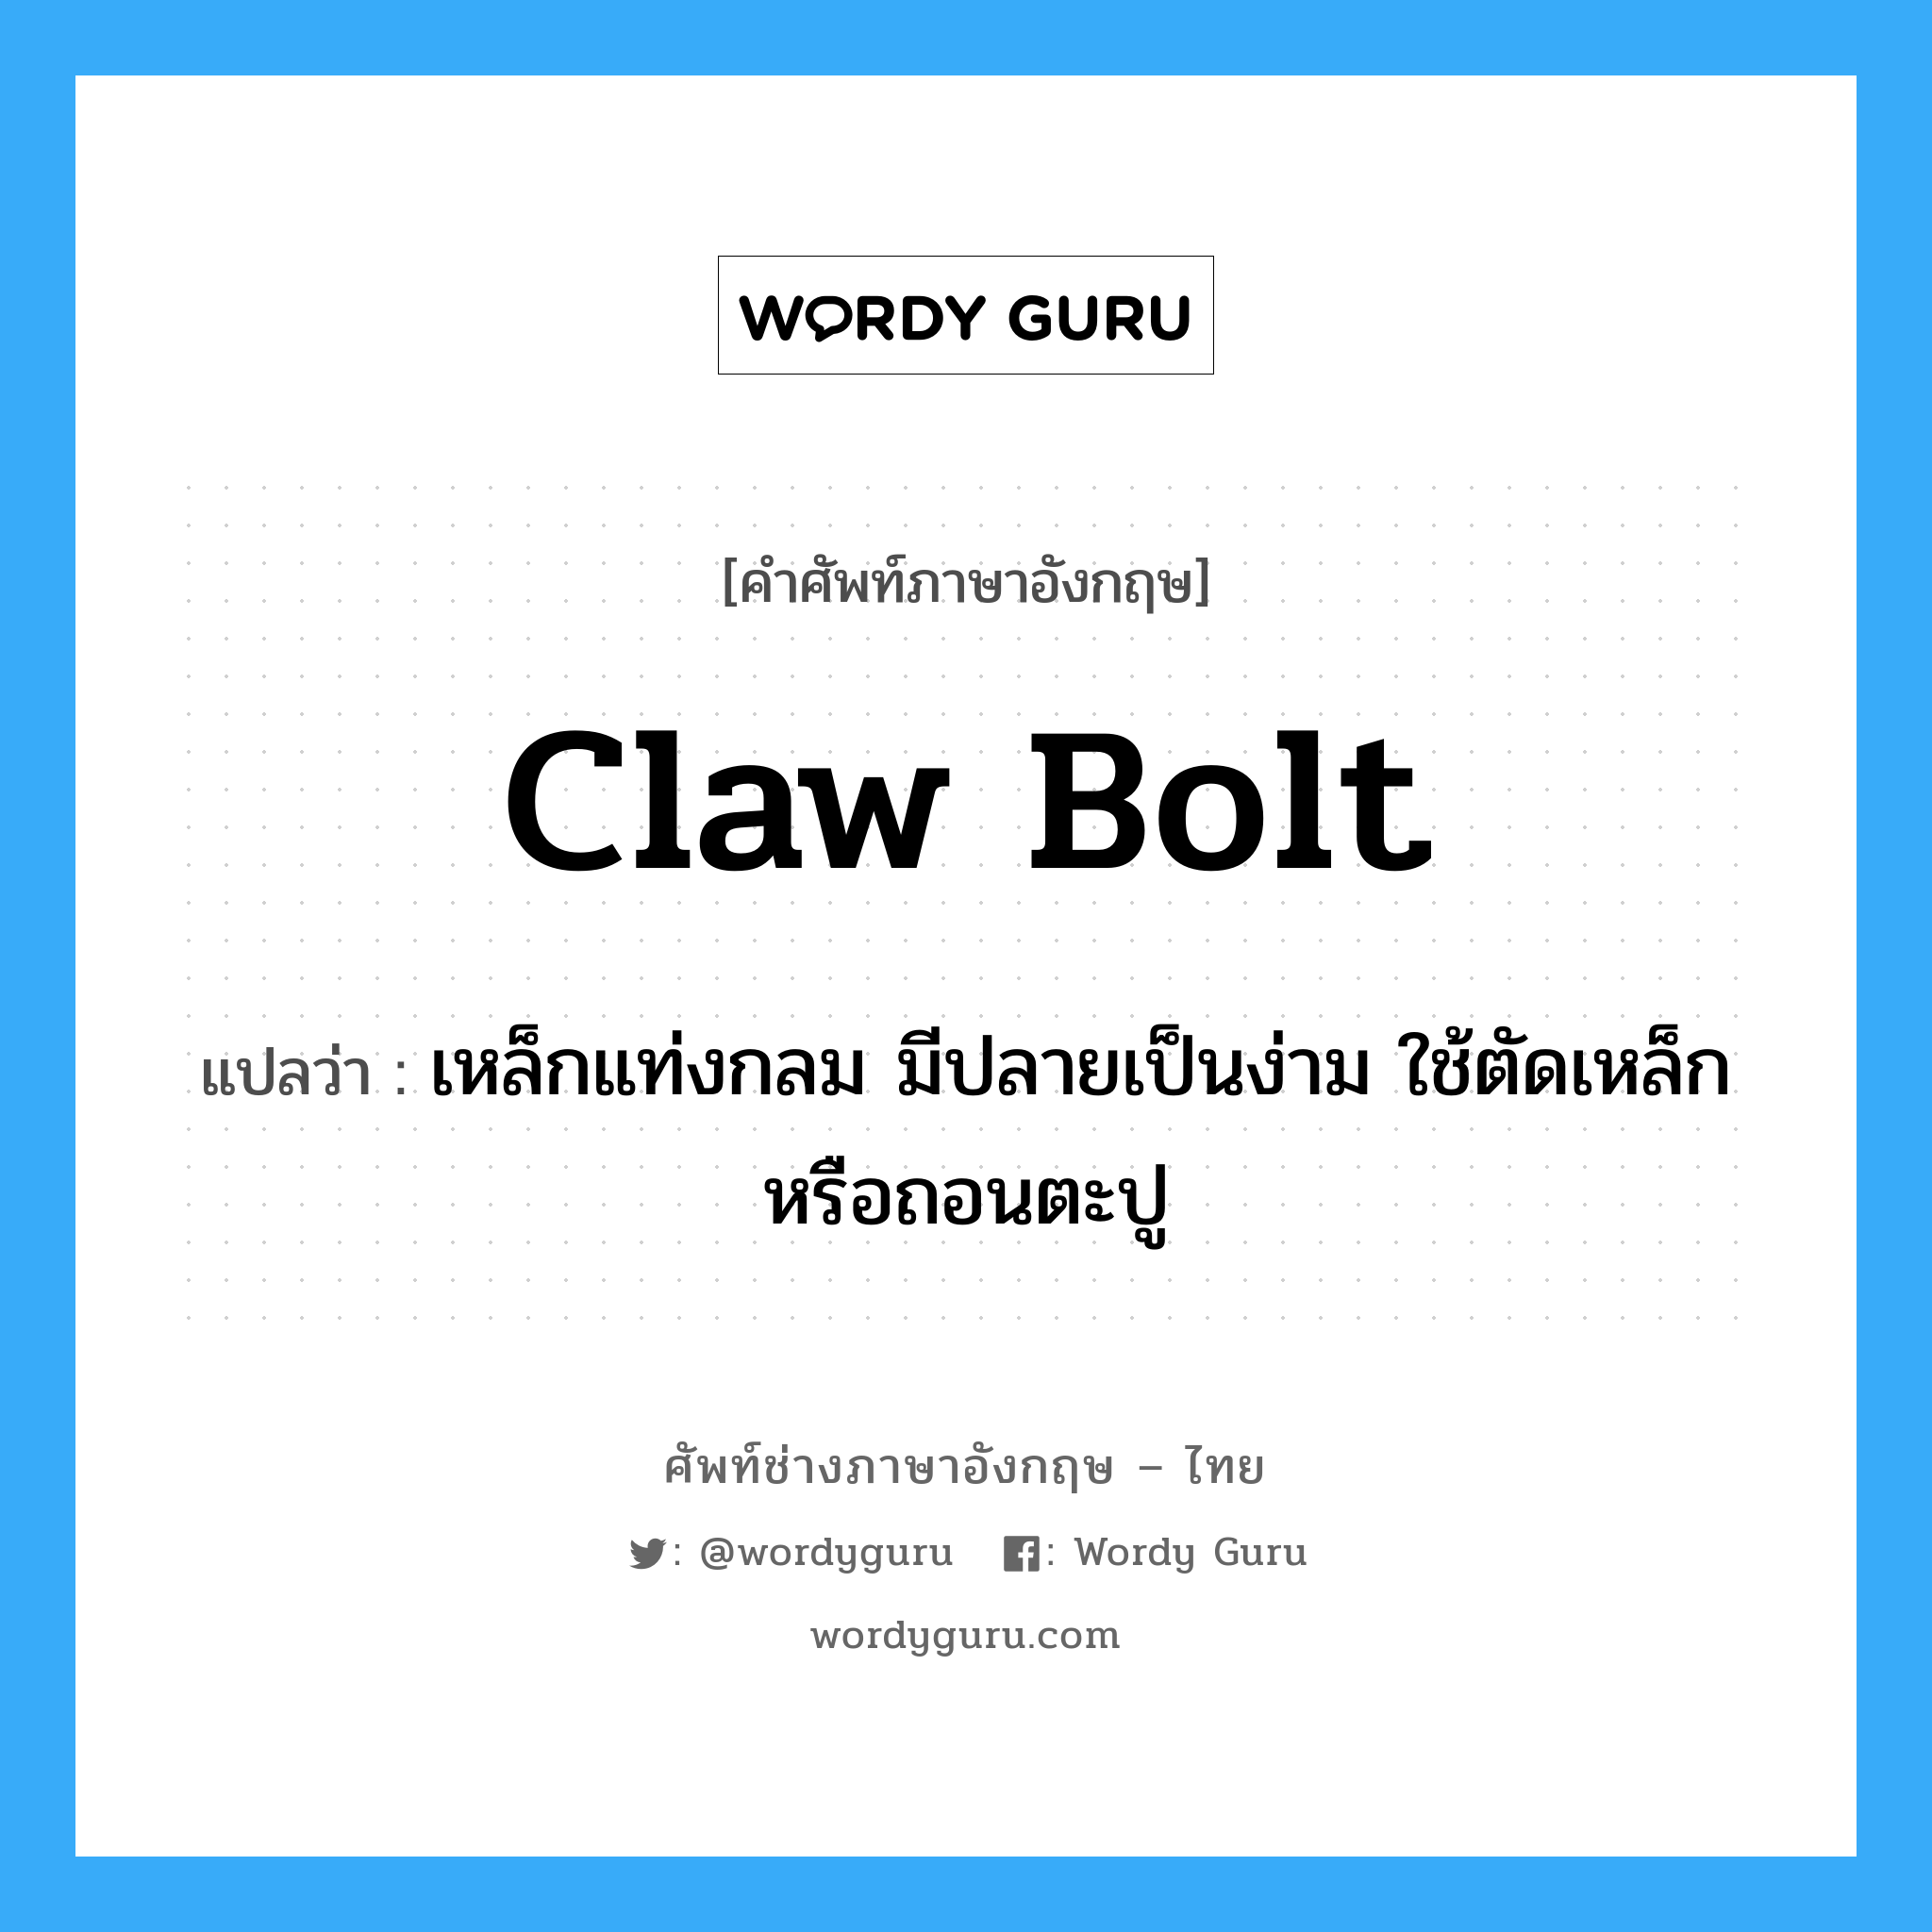 claw bolt แปลว่า?, คำศัพท์ช่างภาษาอังกฤษ - ไทย claw bolt คำศัพท์ภาษาอังกฤษ claw bolt แปลว่า เหล็กแท่งกลม มีปลายเป็นง่าม ใช้ตัดเหล็ก หรือถอนตะปู